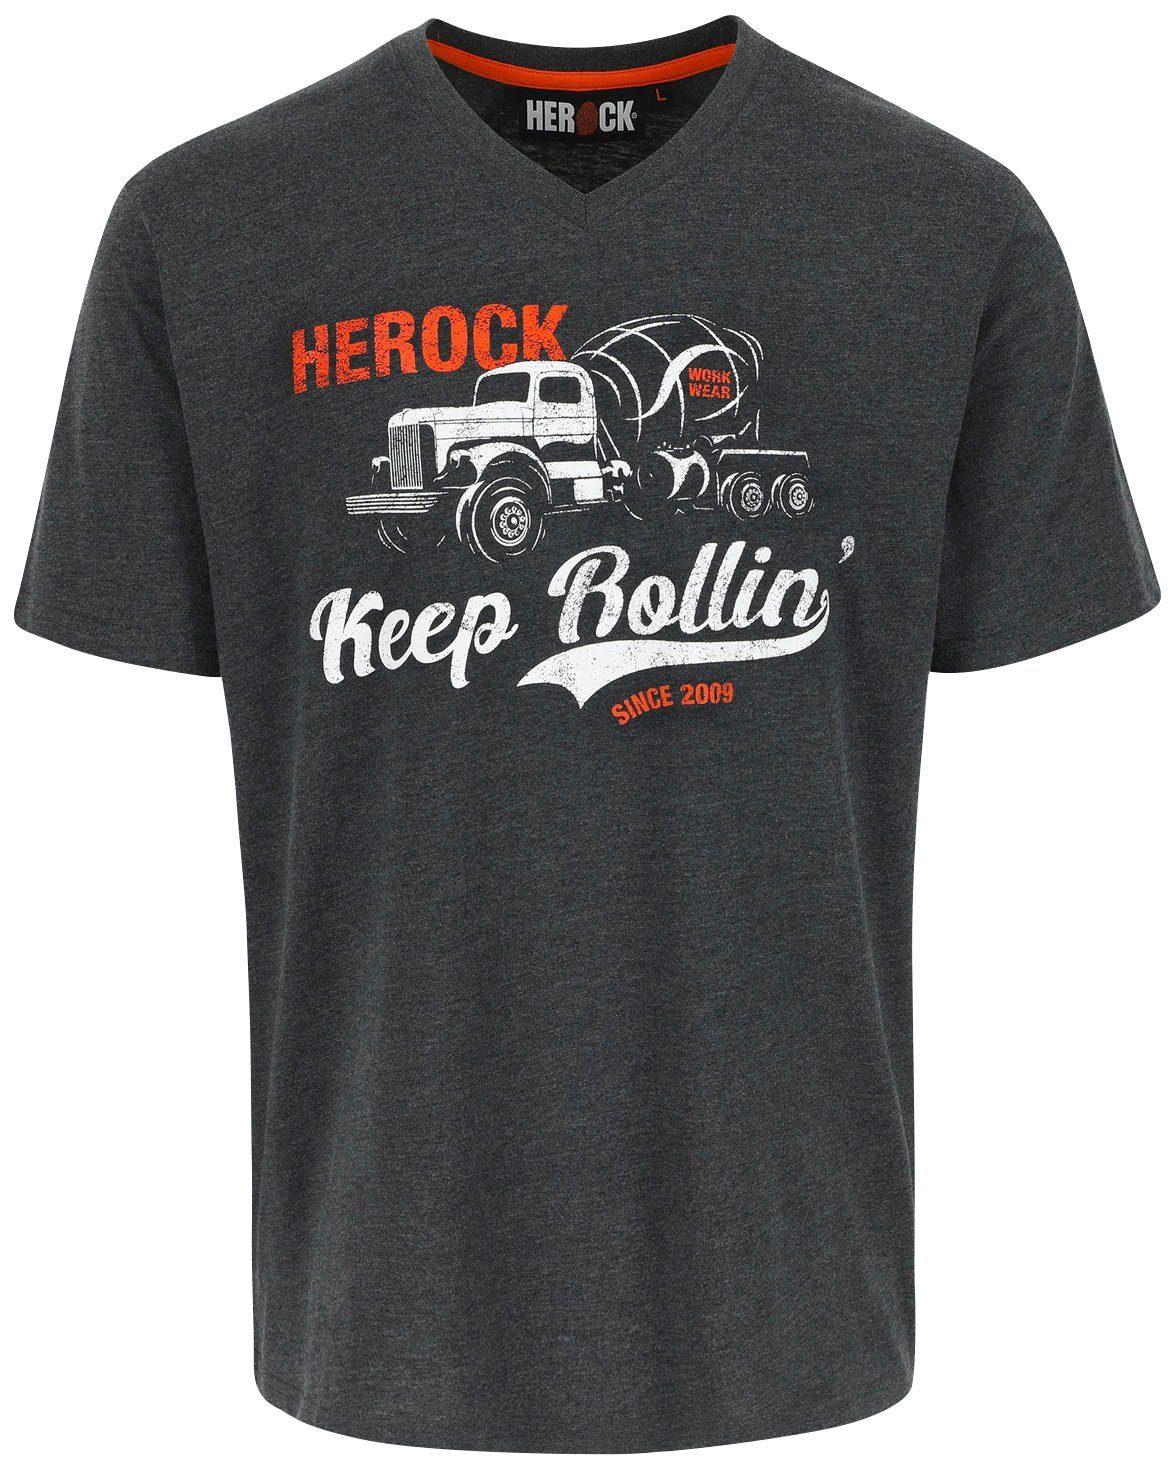 gestricktem Herock V-Ausschnitt Edition, Arbeits-und kurzärmliges T-Shirt Limited Freizeit-T-Shirt mit Ein Rollin